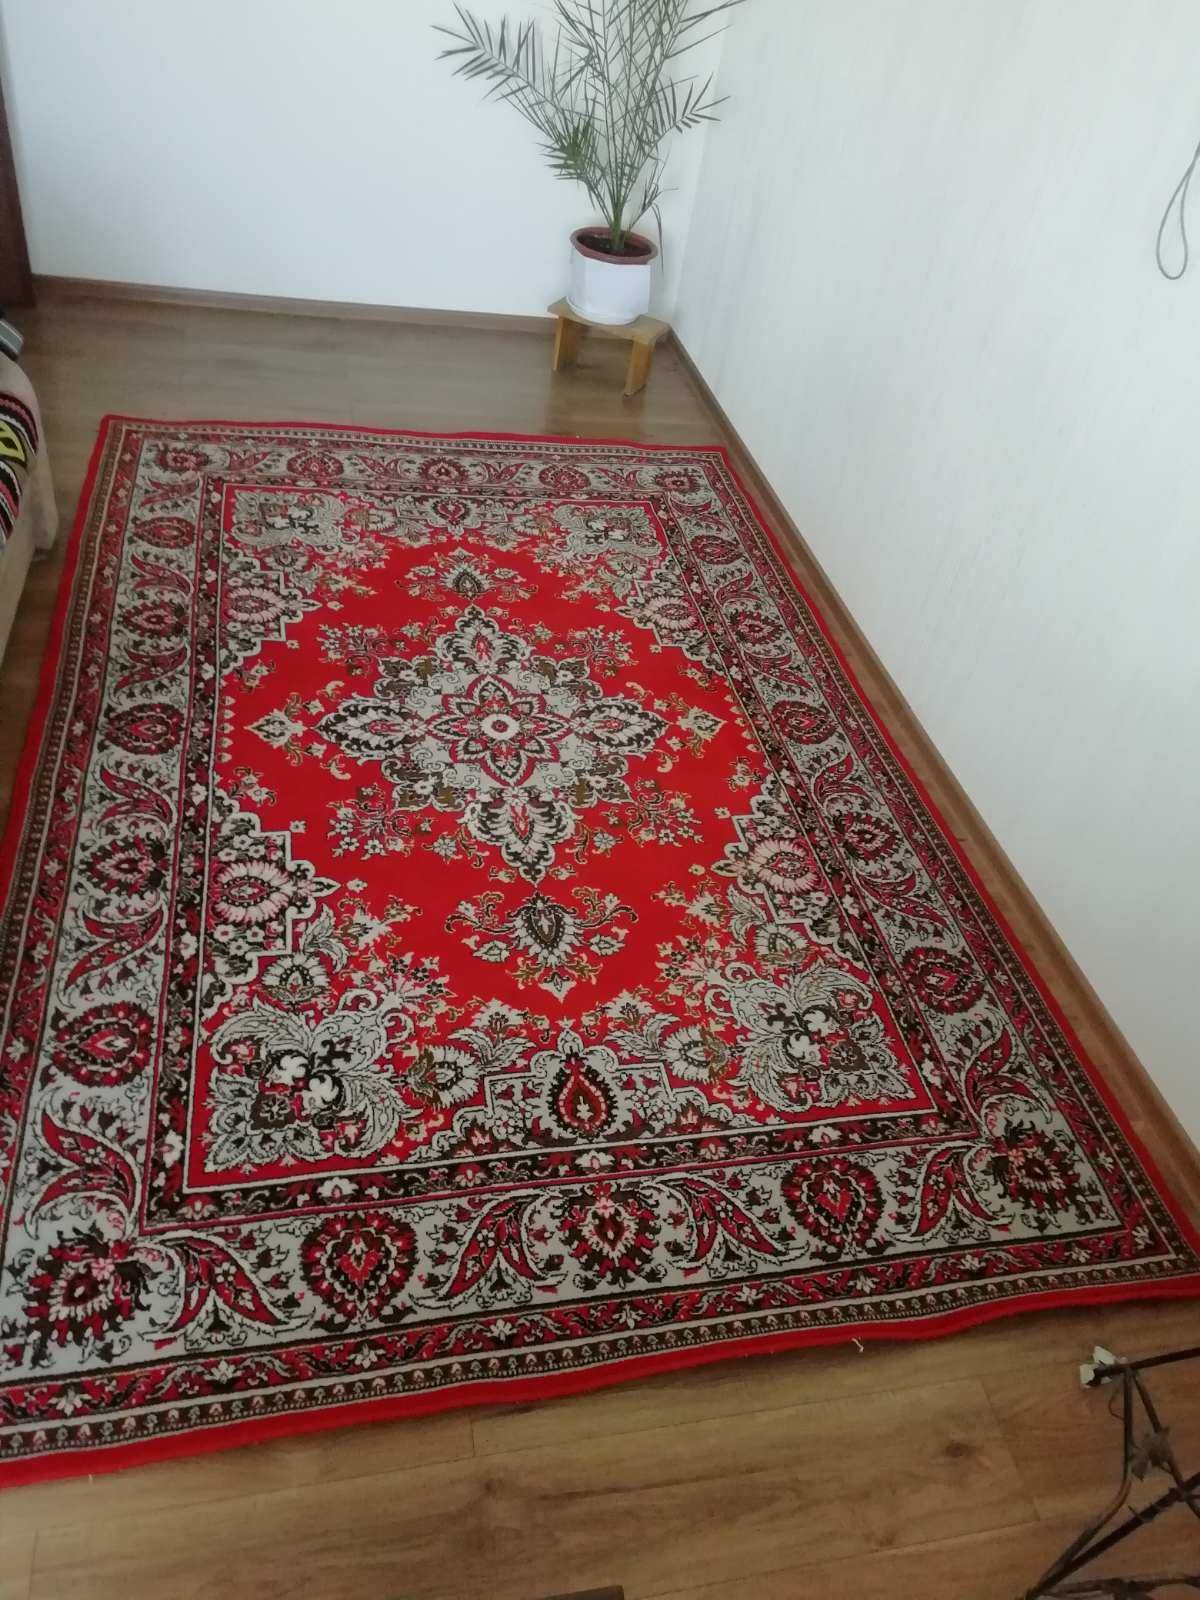 Натуральний шерстяний килим розміром 2*3 метри